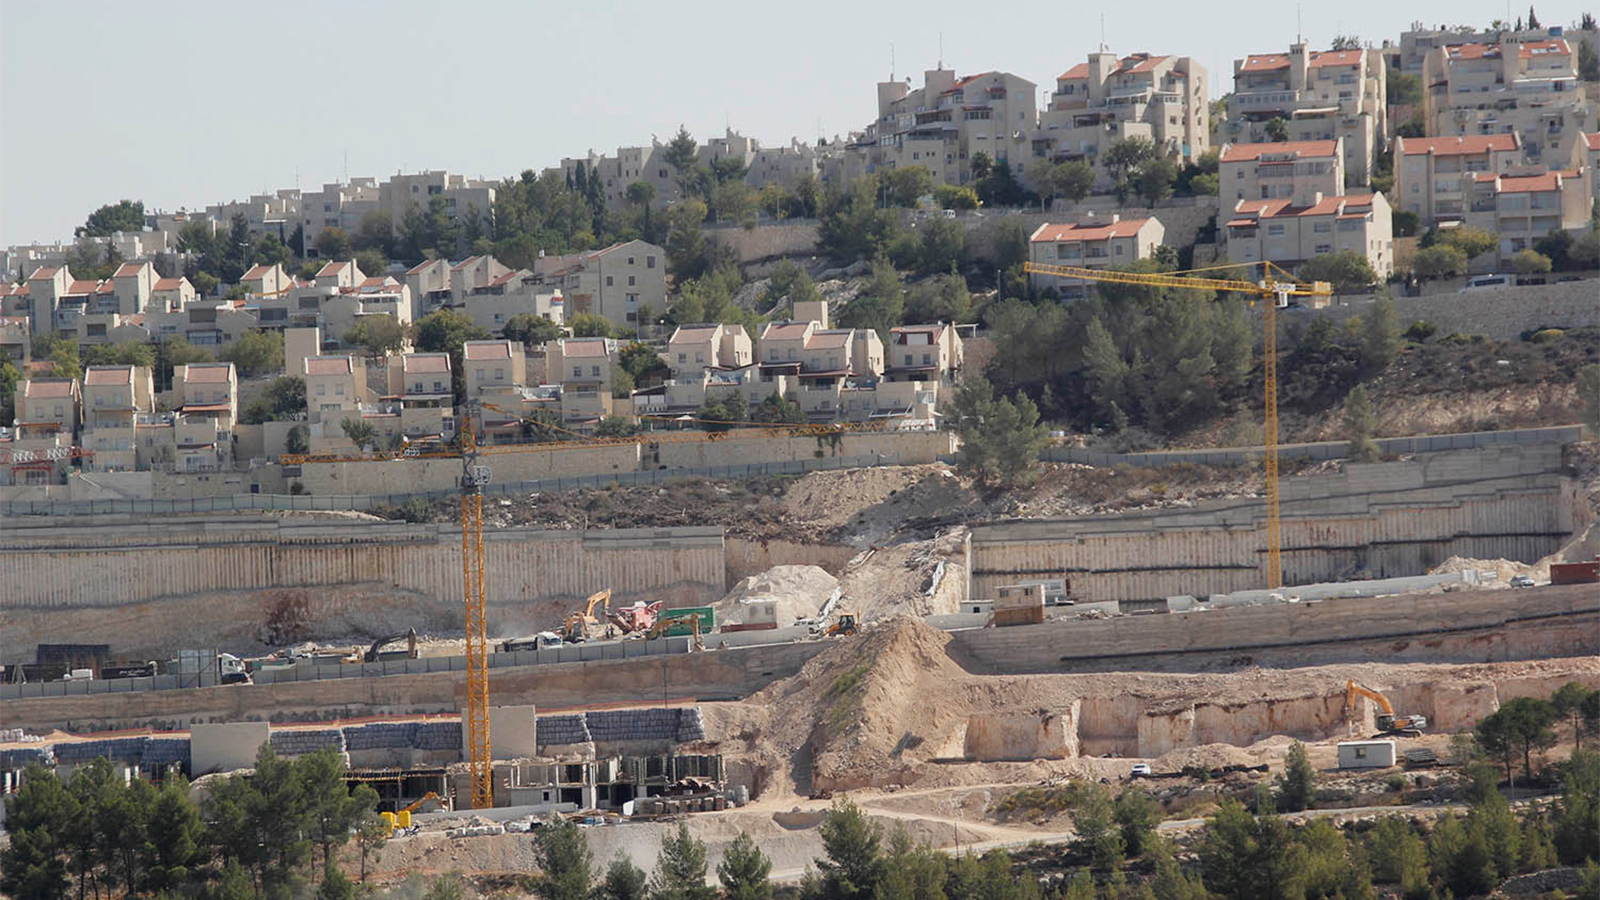 ‪أعمال بناء استيطاني مستمر على أراضي قرية الولجة بين القدس وبيت لحم حيث يهدف الاحتلال لربط المستوطنات هناك بشبكة طرق واسعة‬ (الجزيرة)